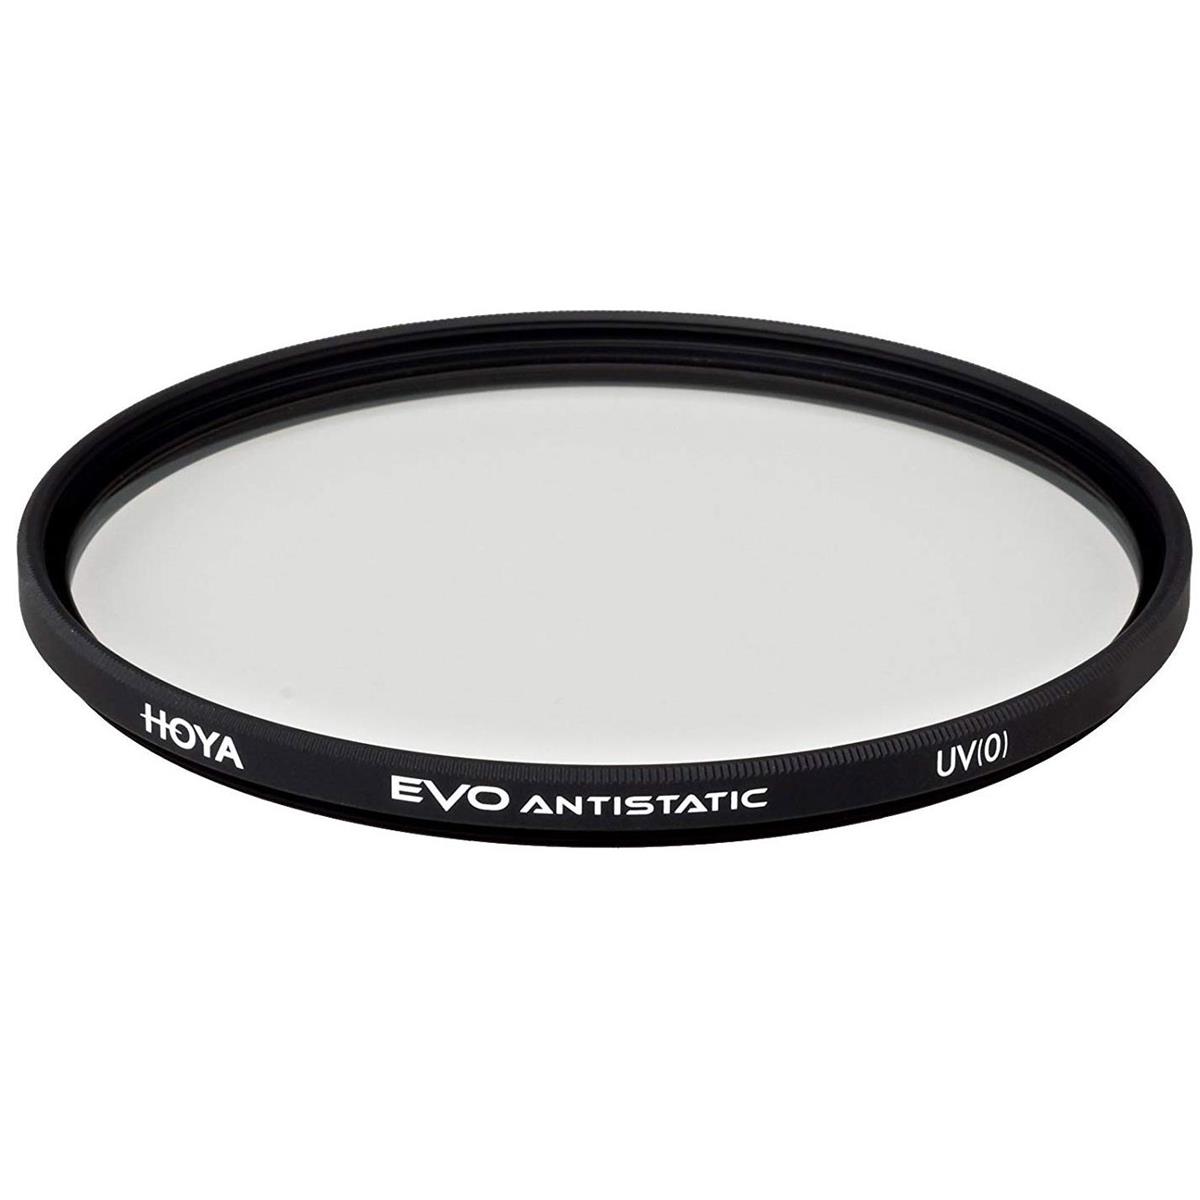 Hoya Evo Antistatic UV Filter - 77mm